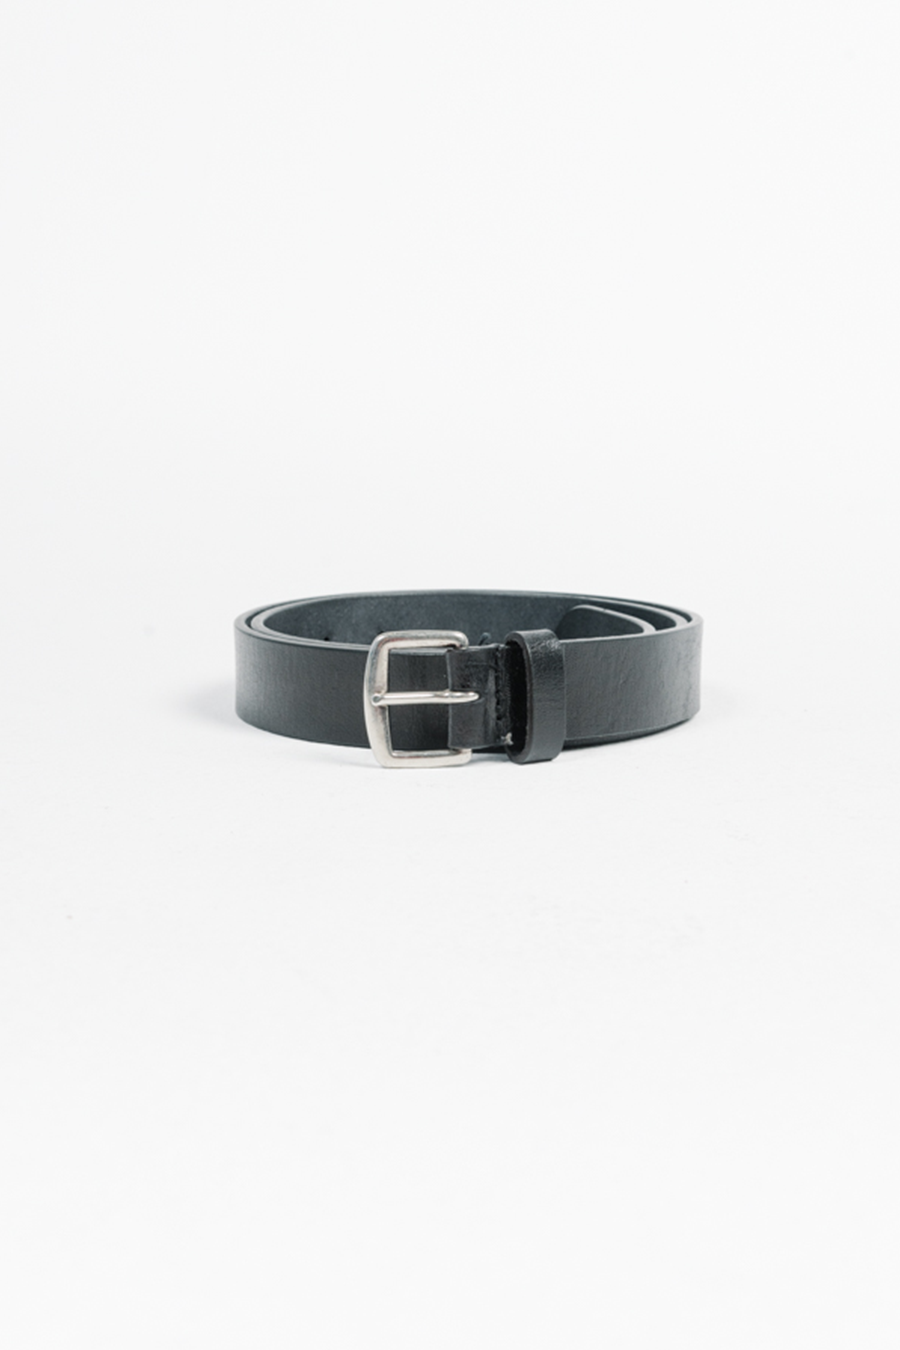 Leather Belt | Black - Main Image Number 1 of 2